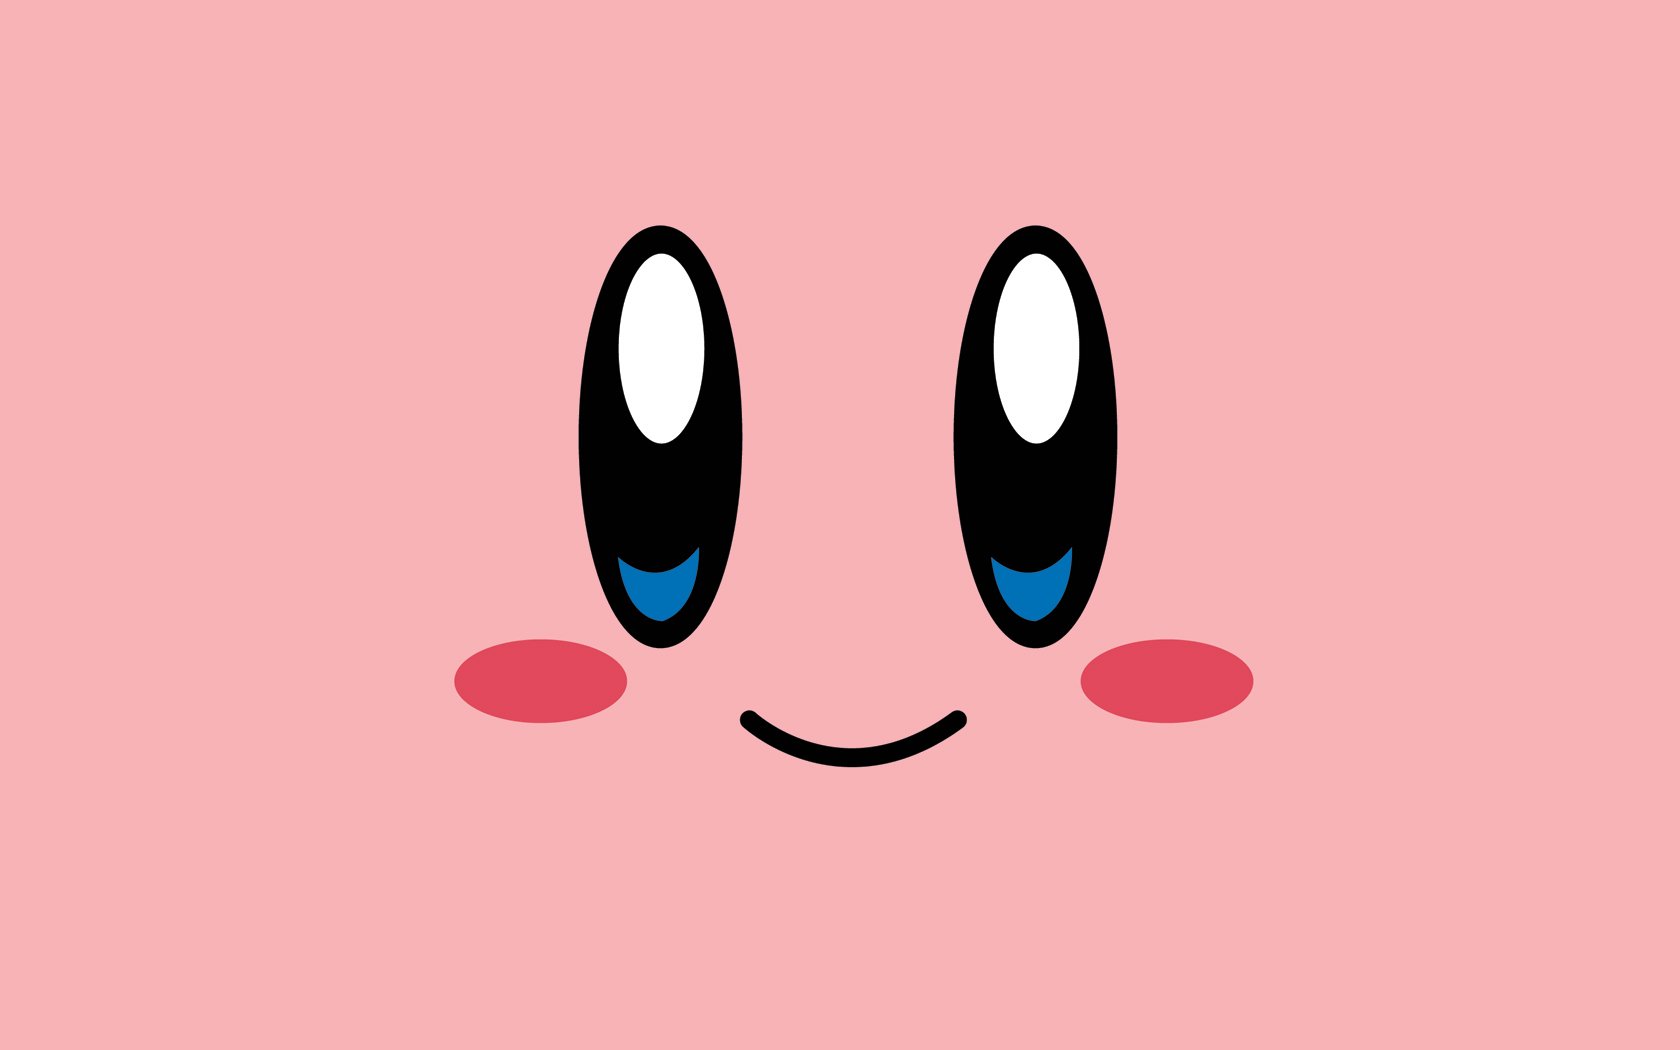 Những bức ảnh nền HD Kirby sẽ không thể nào làm bạn thất vọng về vẻ đẹp và màu sắc. Hãy đón nhận nhập vào thế giới của Kirby với một bức hình nền hoàn hảo để trang trí cho thiết bị của bạn!